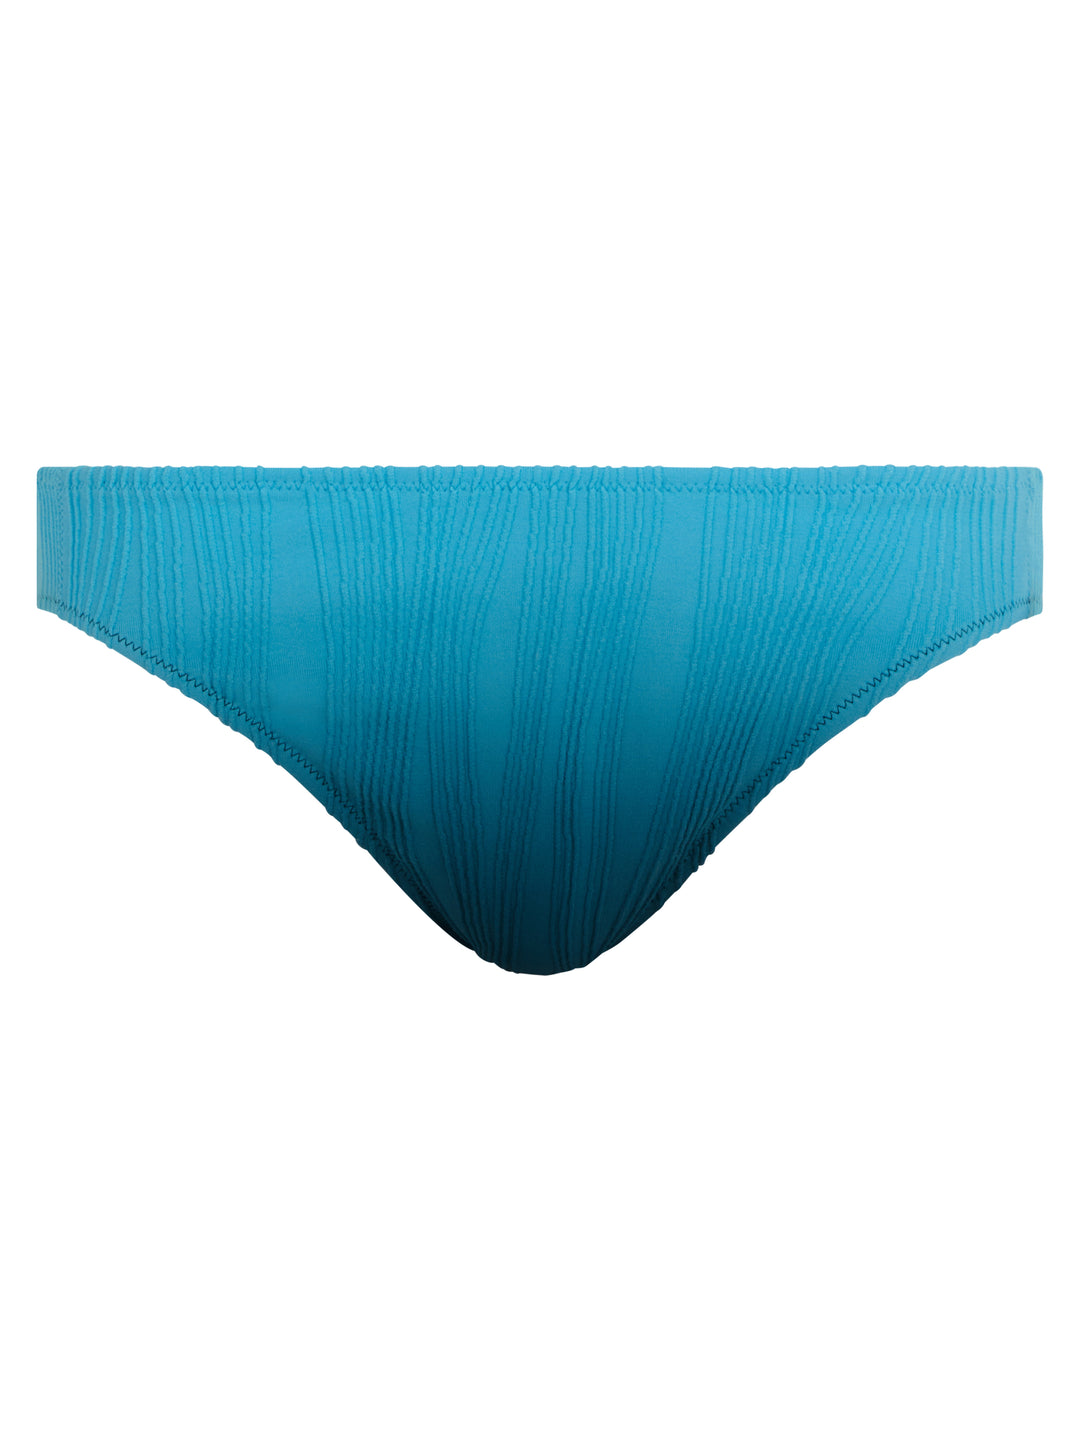 Costumi da bagno Chantelle - Slip Swim Taglia unica Cravatta e tintura blu